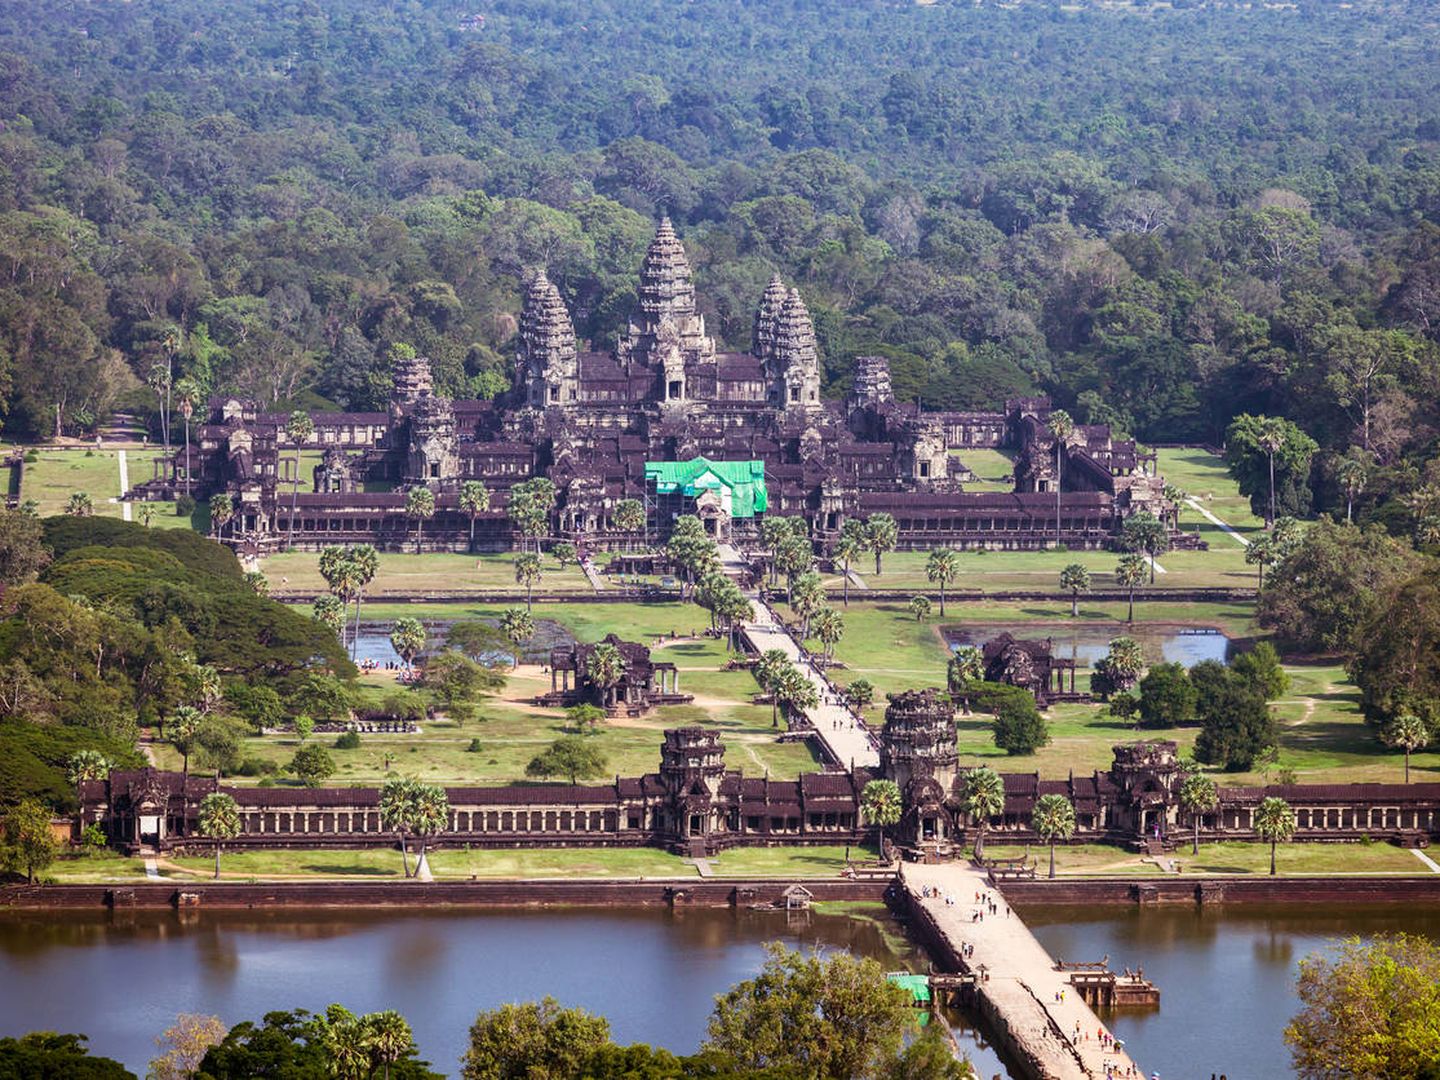 Angkor Wat, rodeado por su característico foso. (iStock)